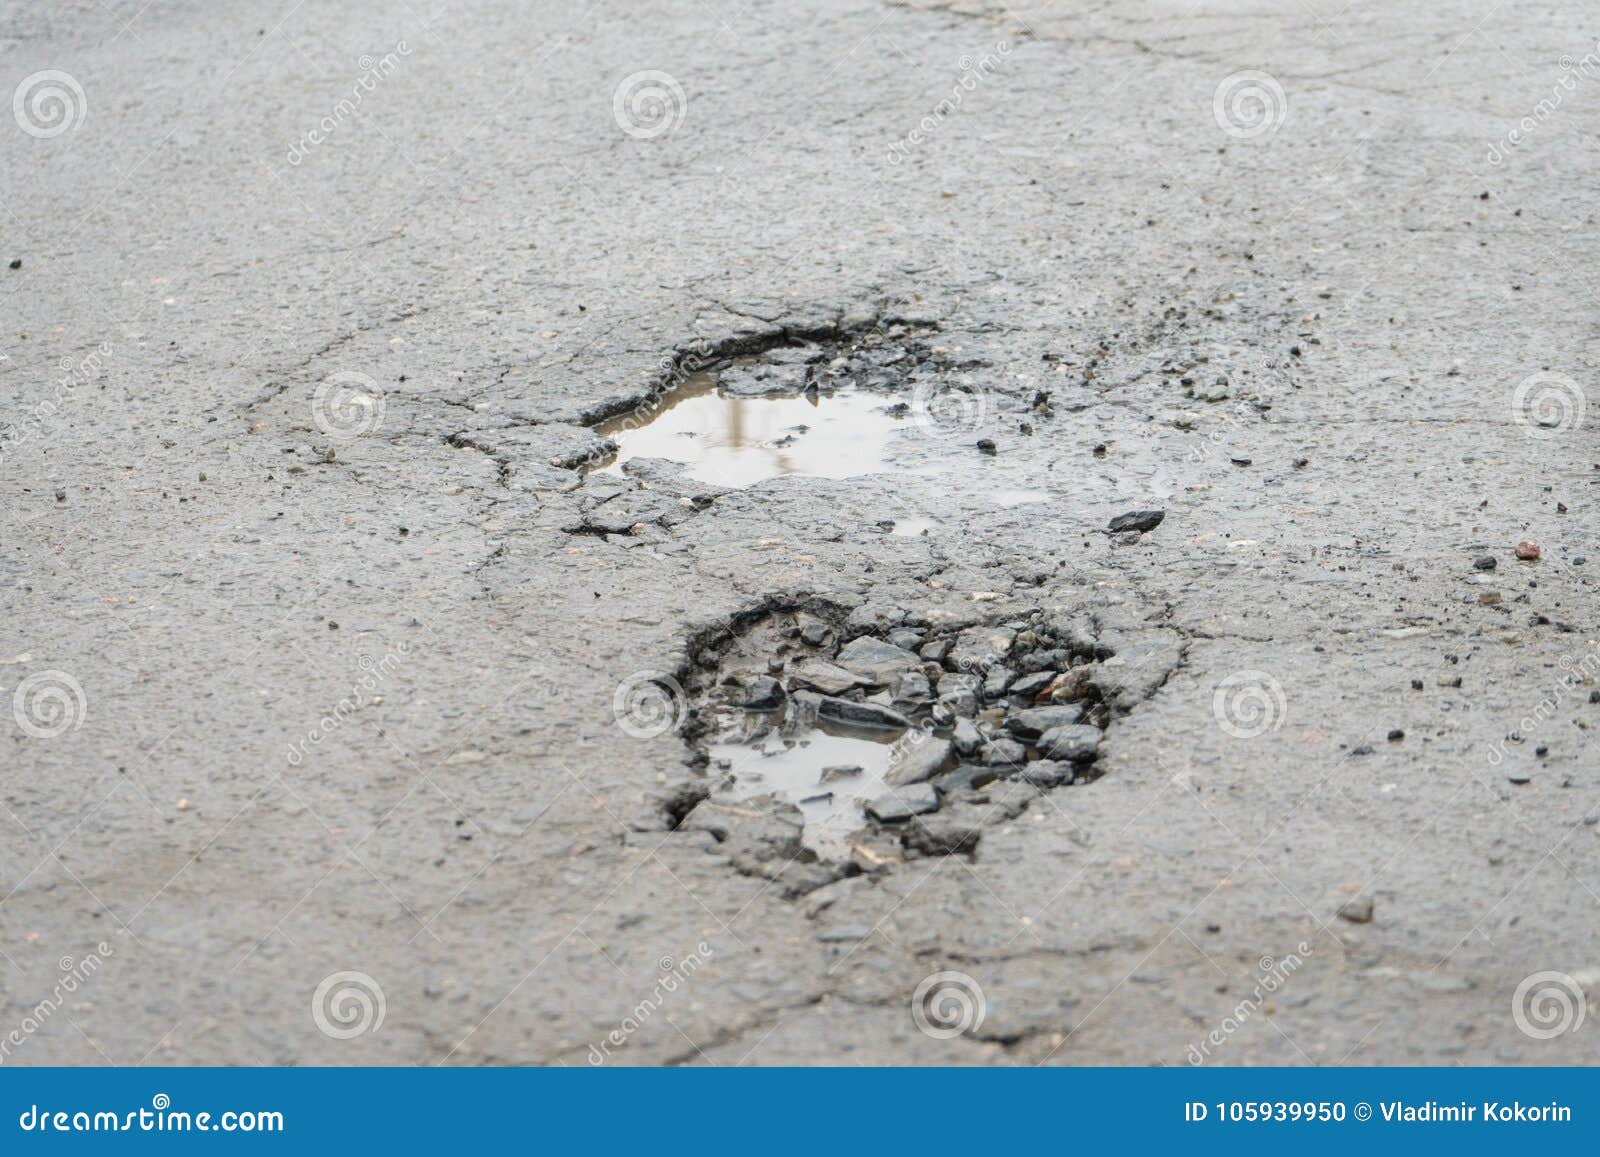 potholes. potholes dangerous to motorists and pedestrians.